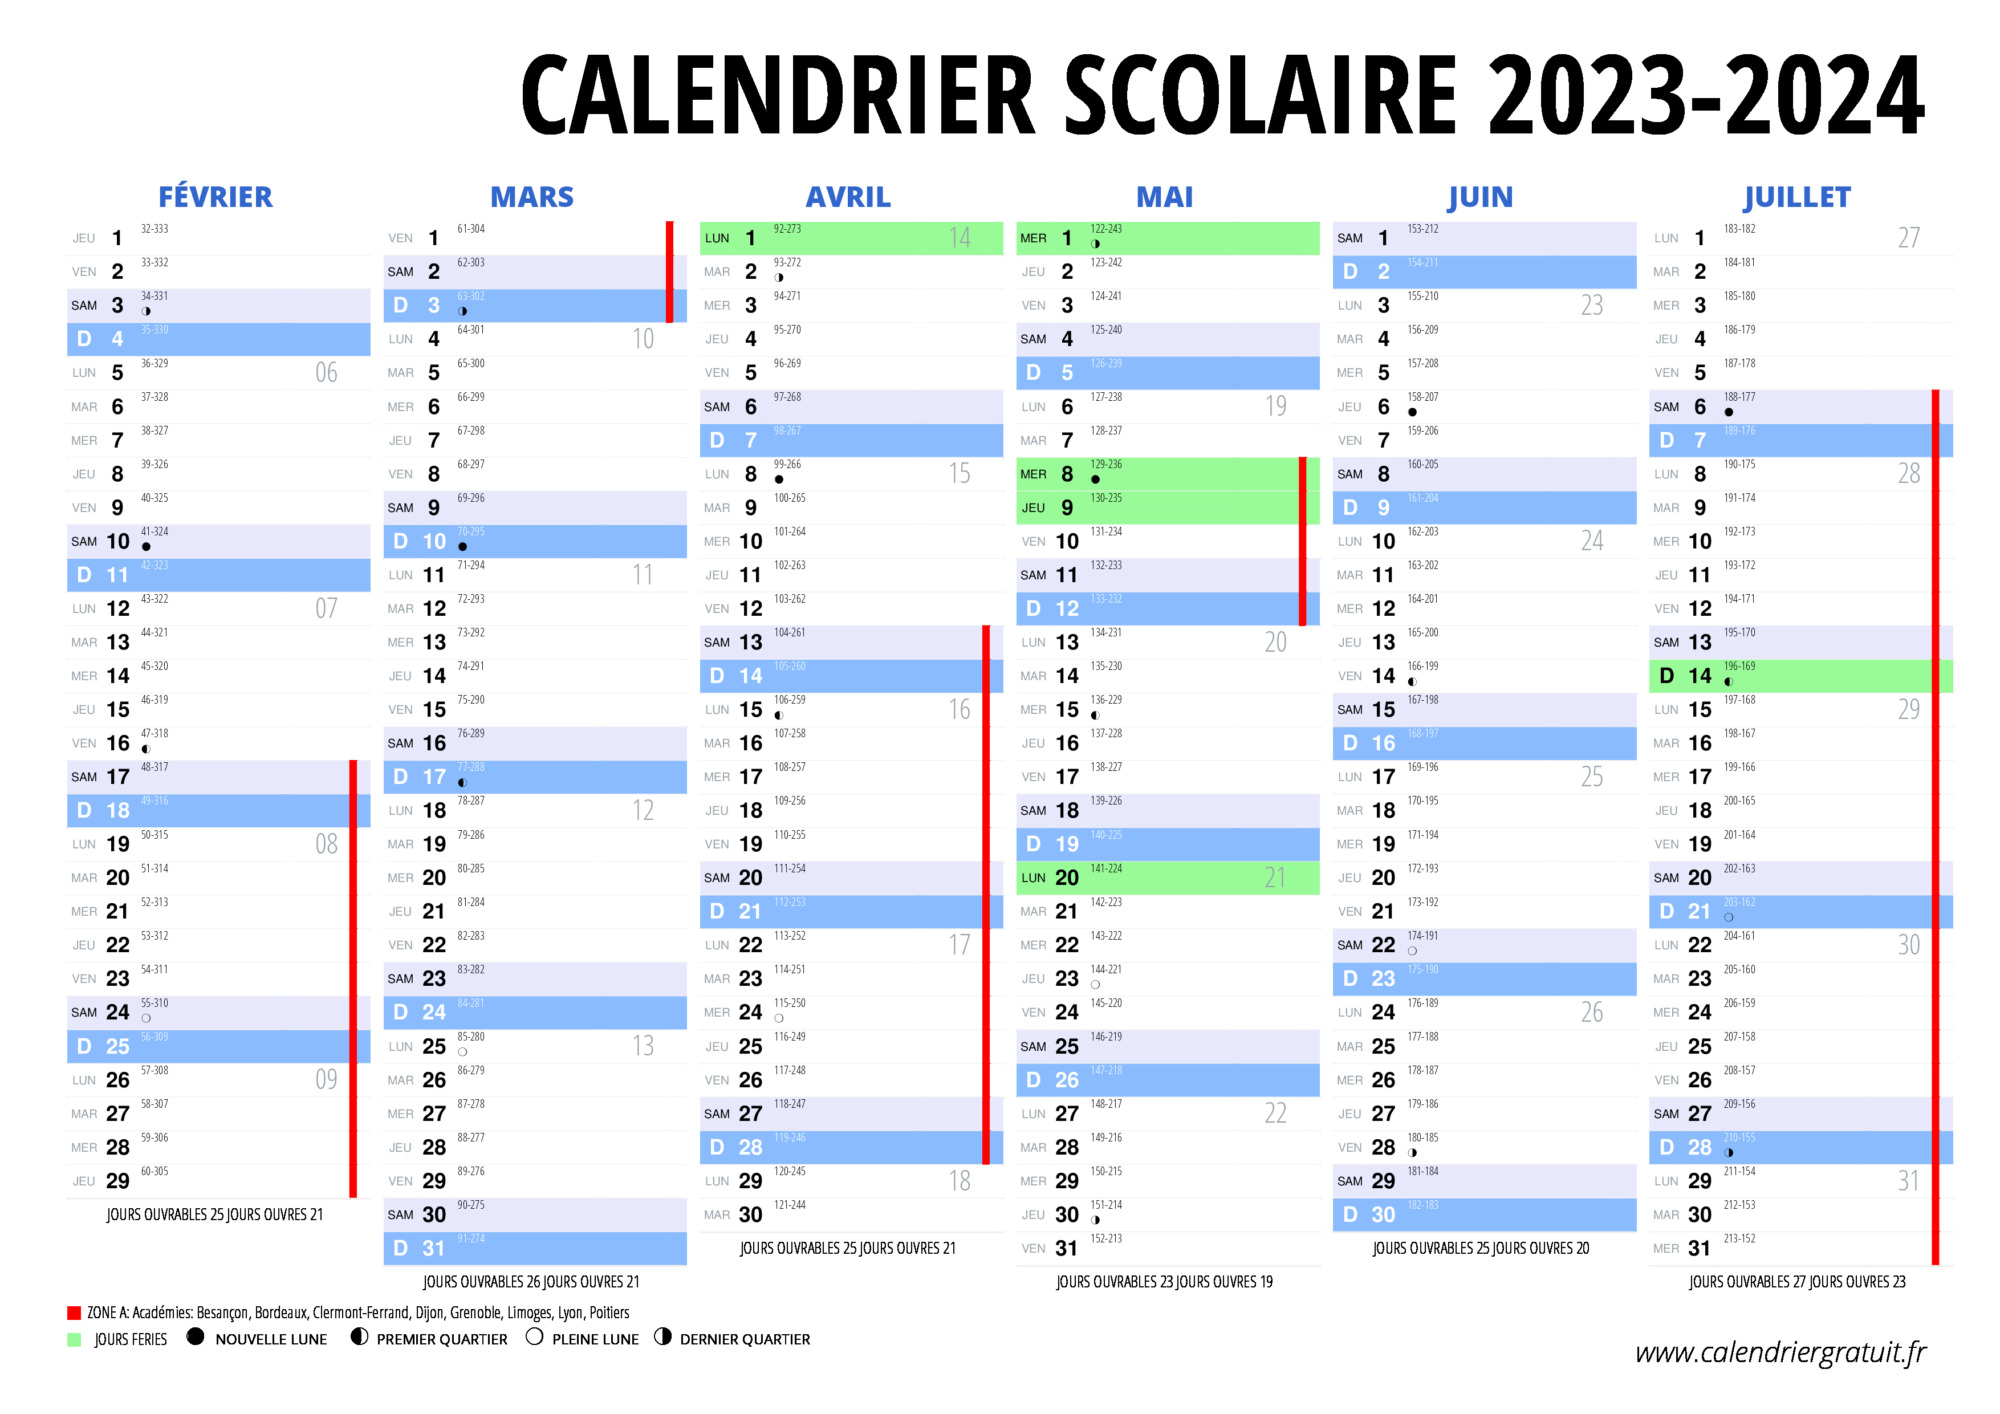 Calendrier 2024 - Zone 6